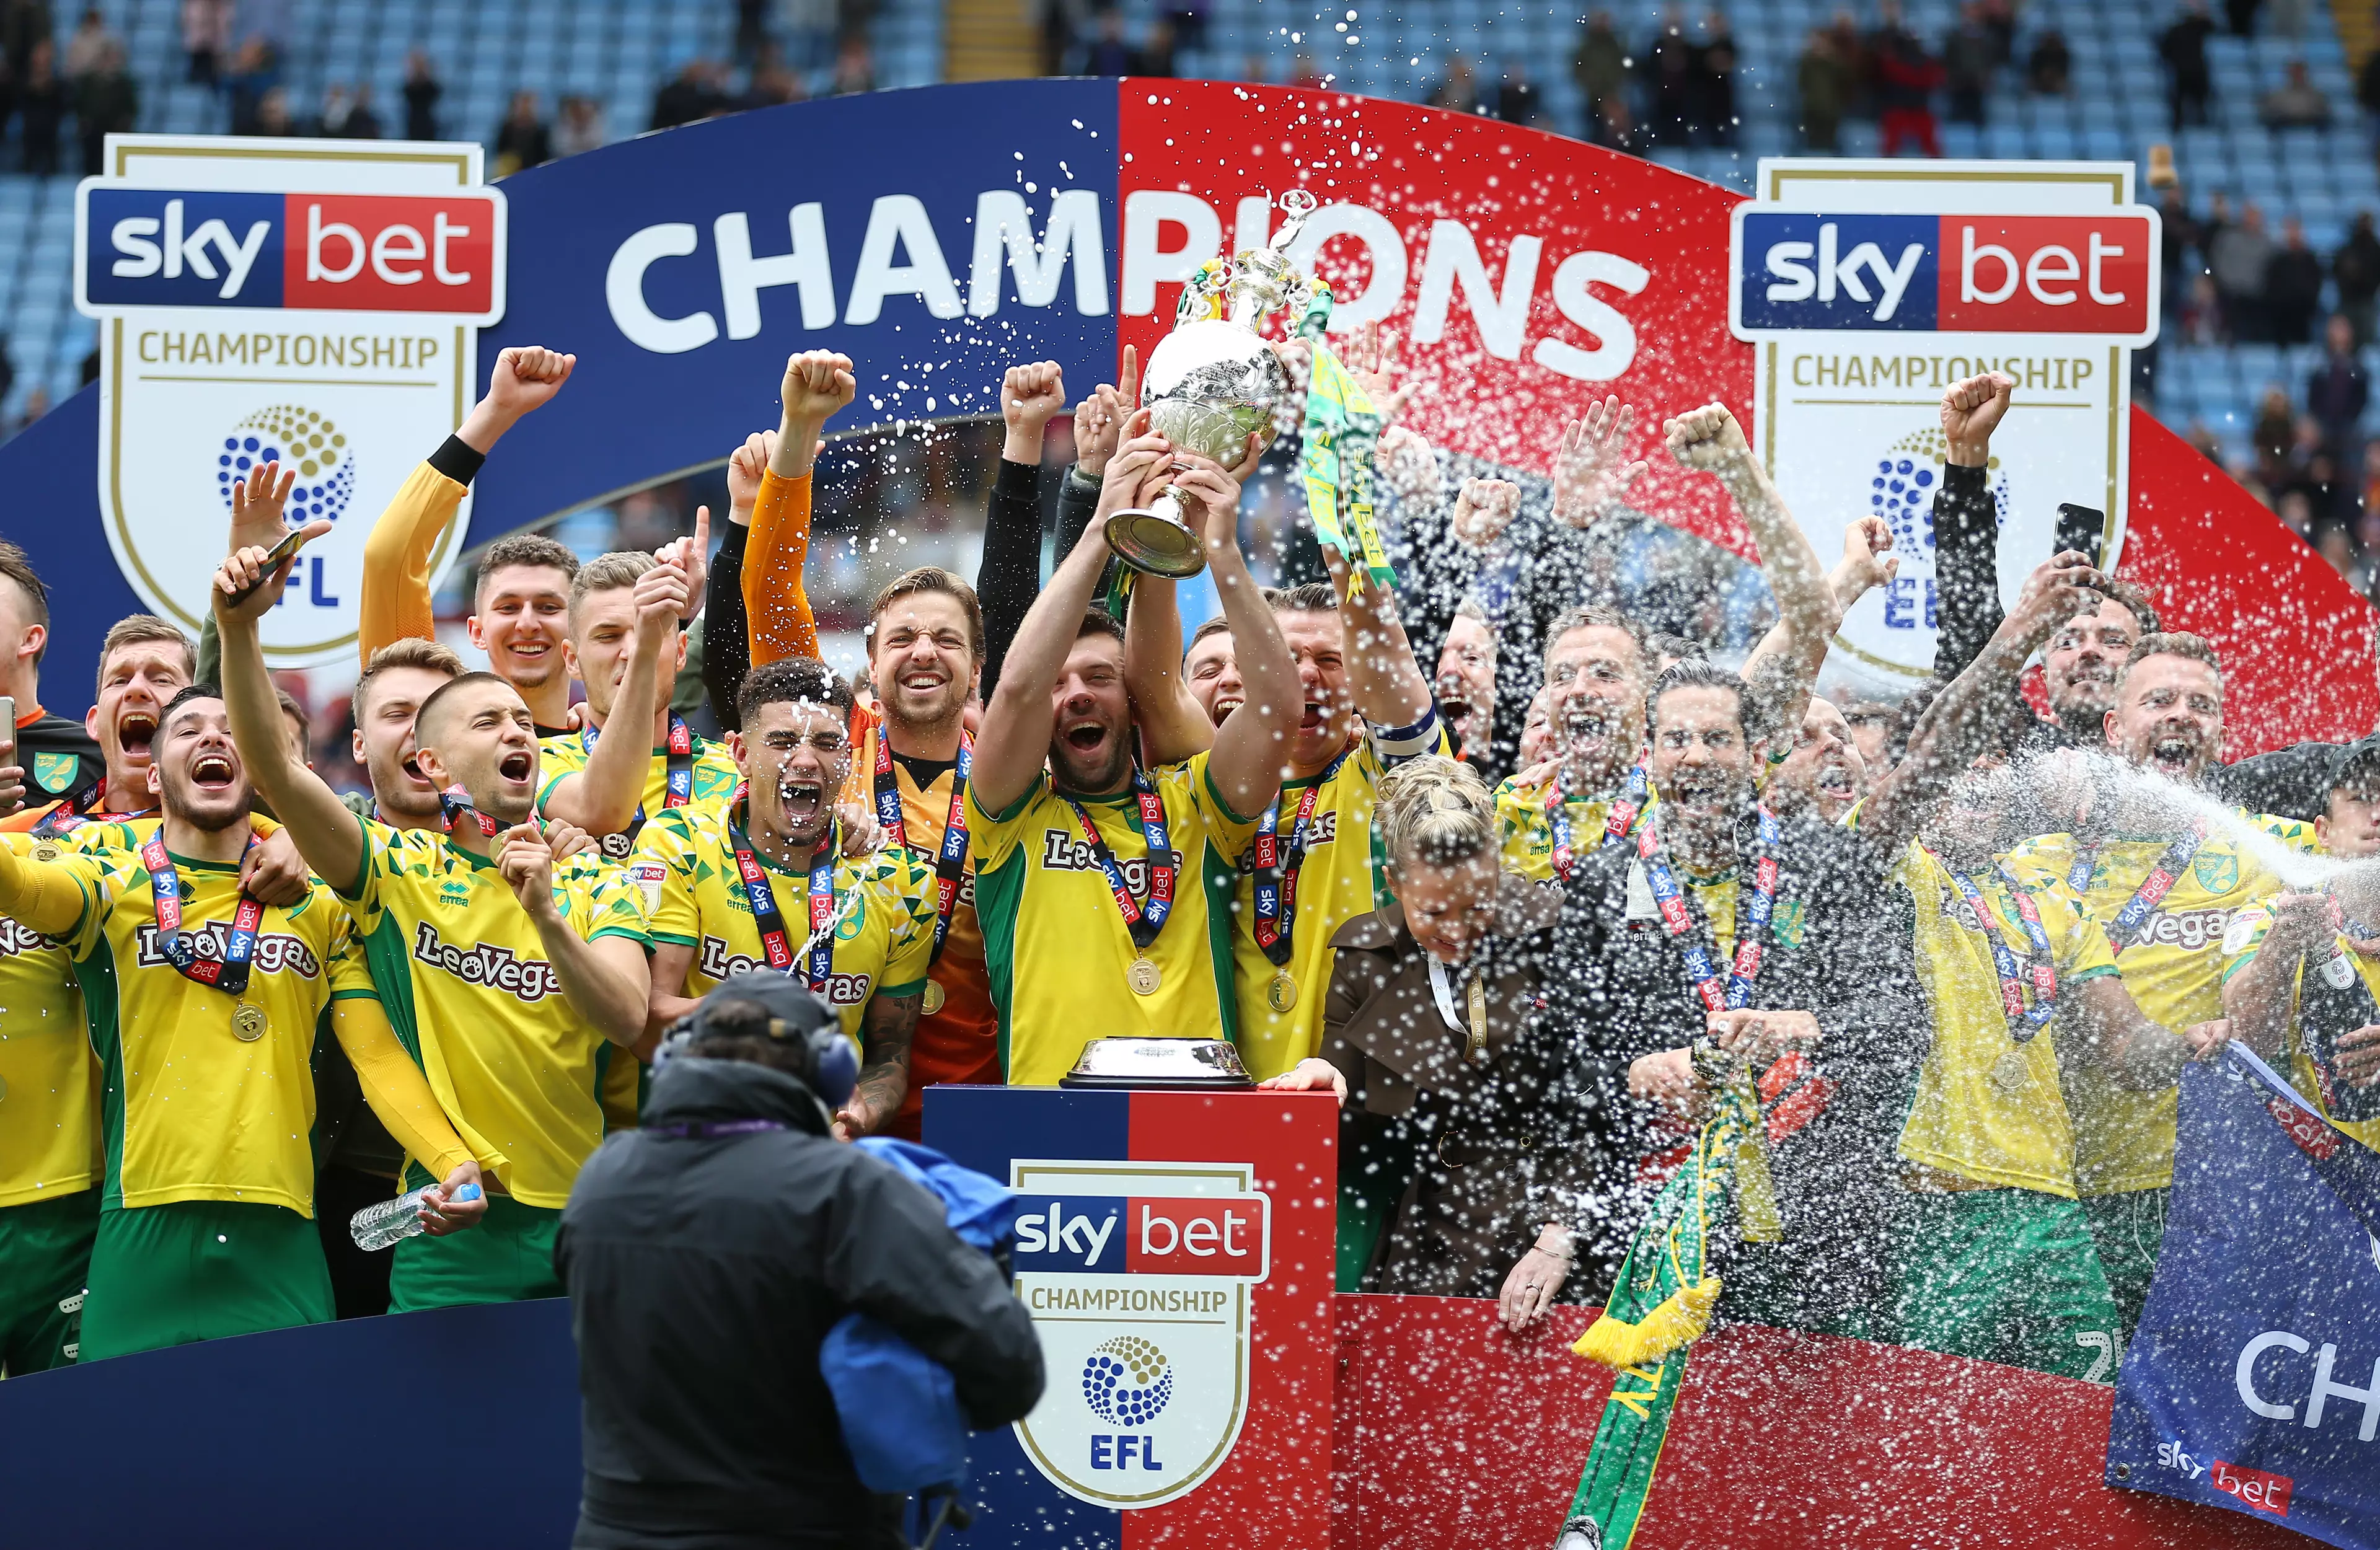 Norwich players celebrate winning the Championship last season. Image: PA Images